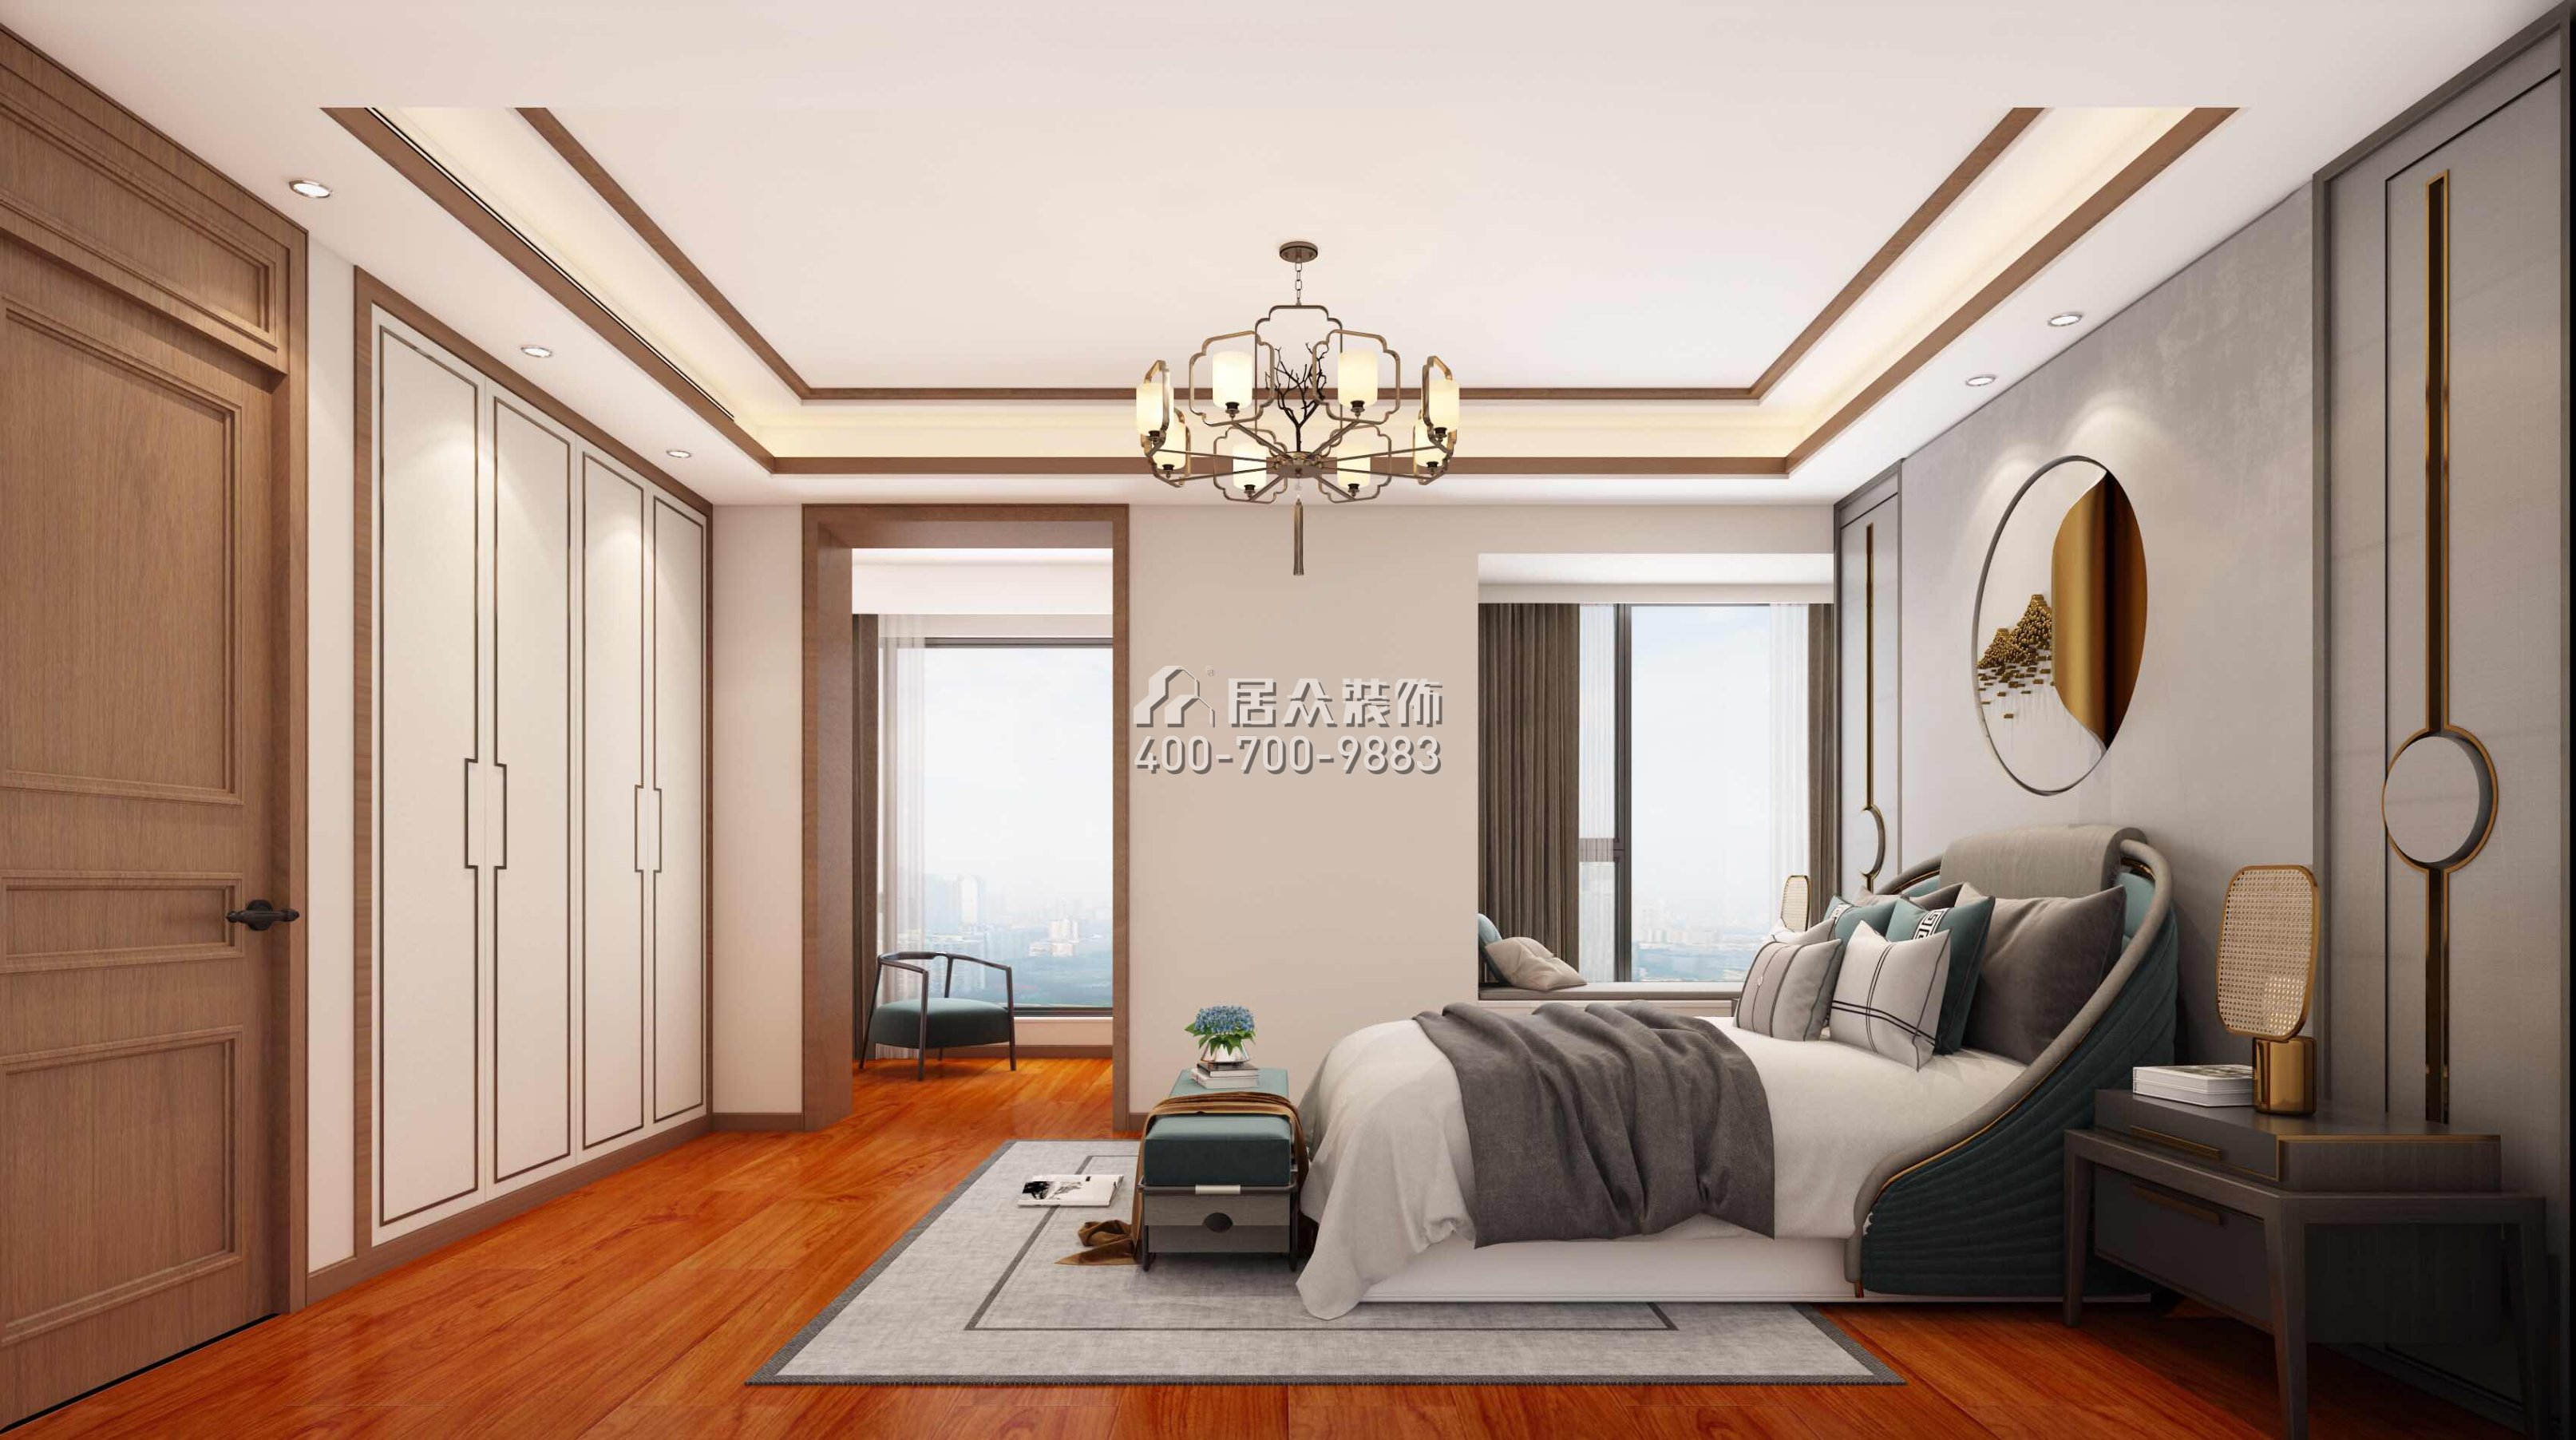 寶生midtown 207平方米中式風格平層戶型臥室裝修效果圖